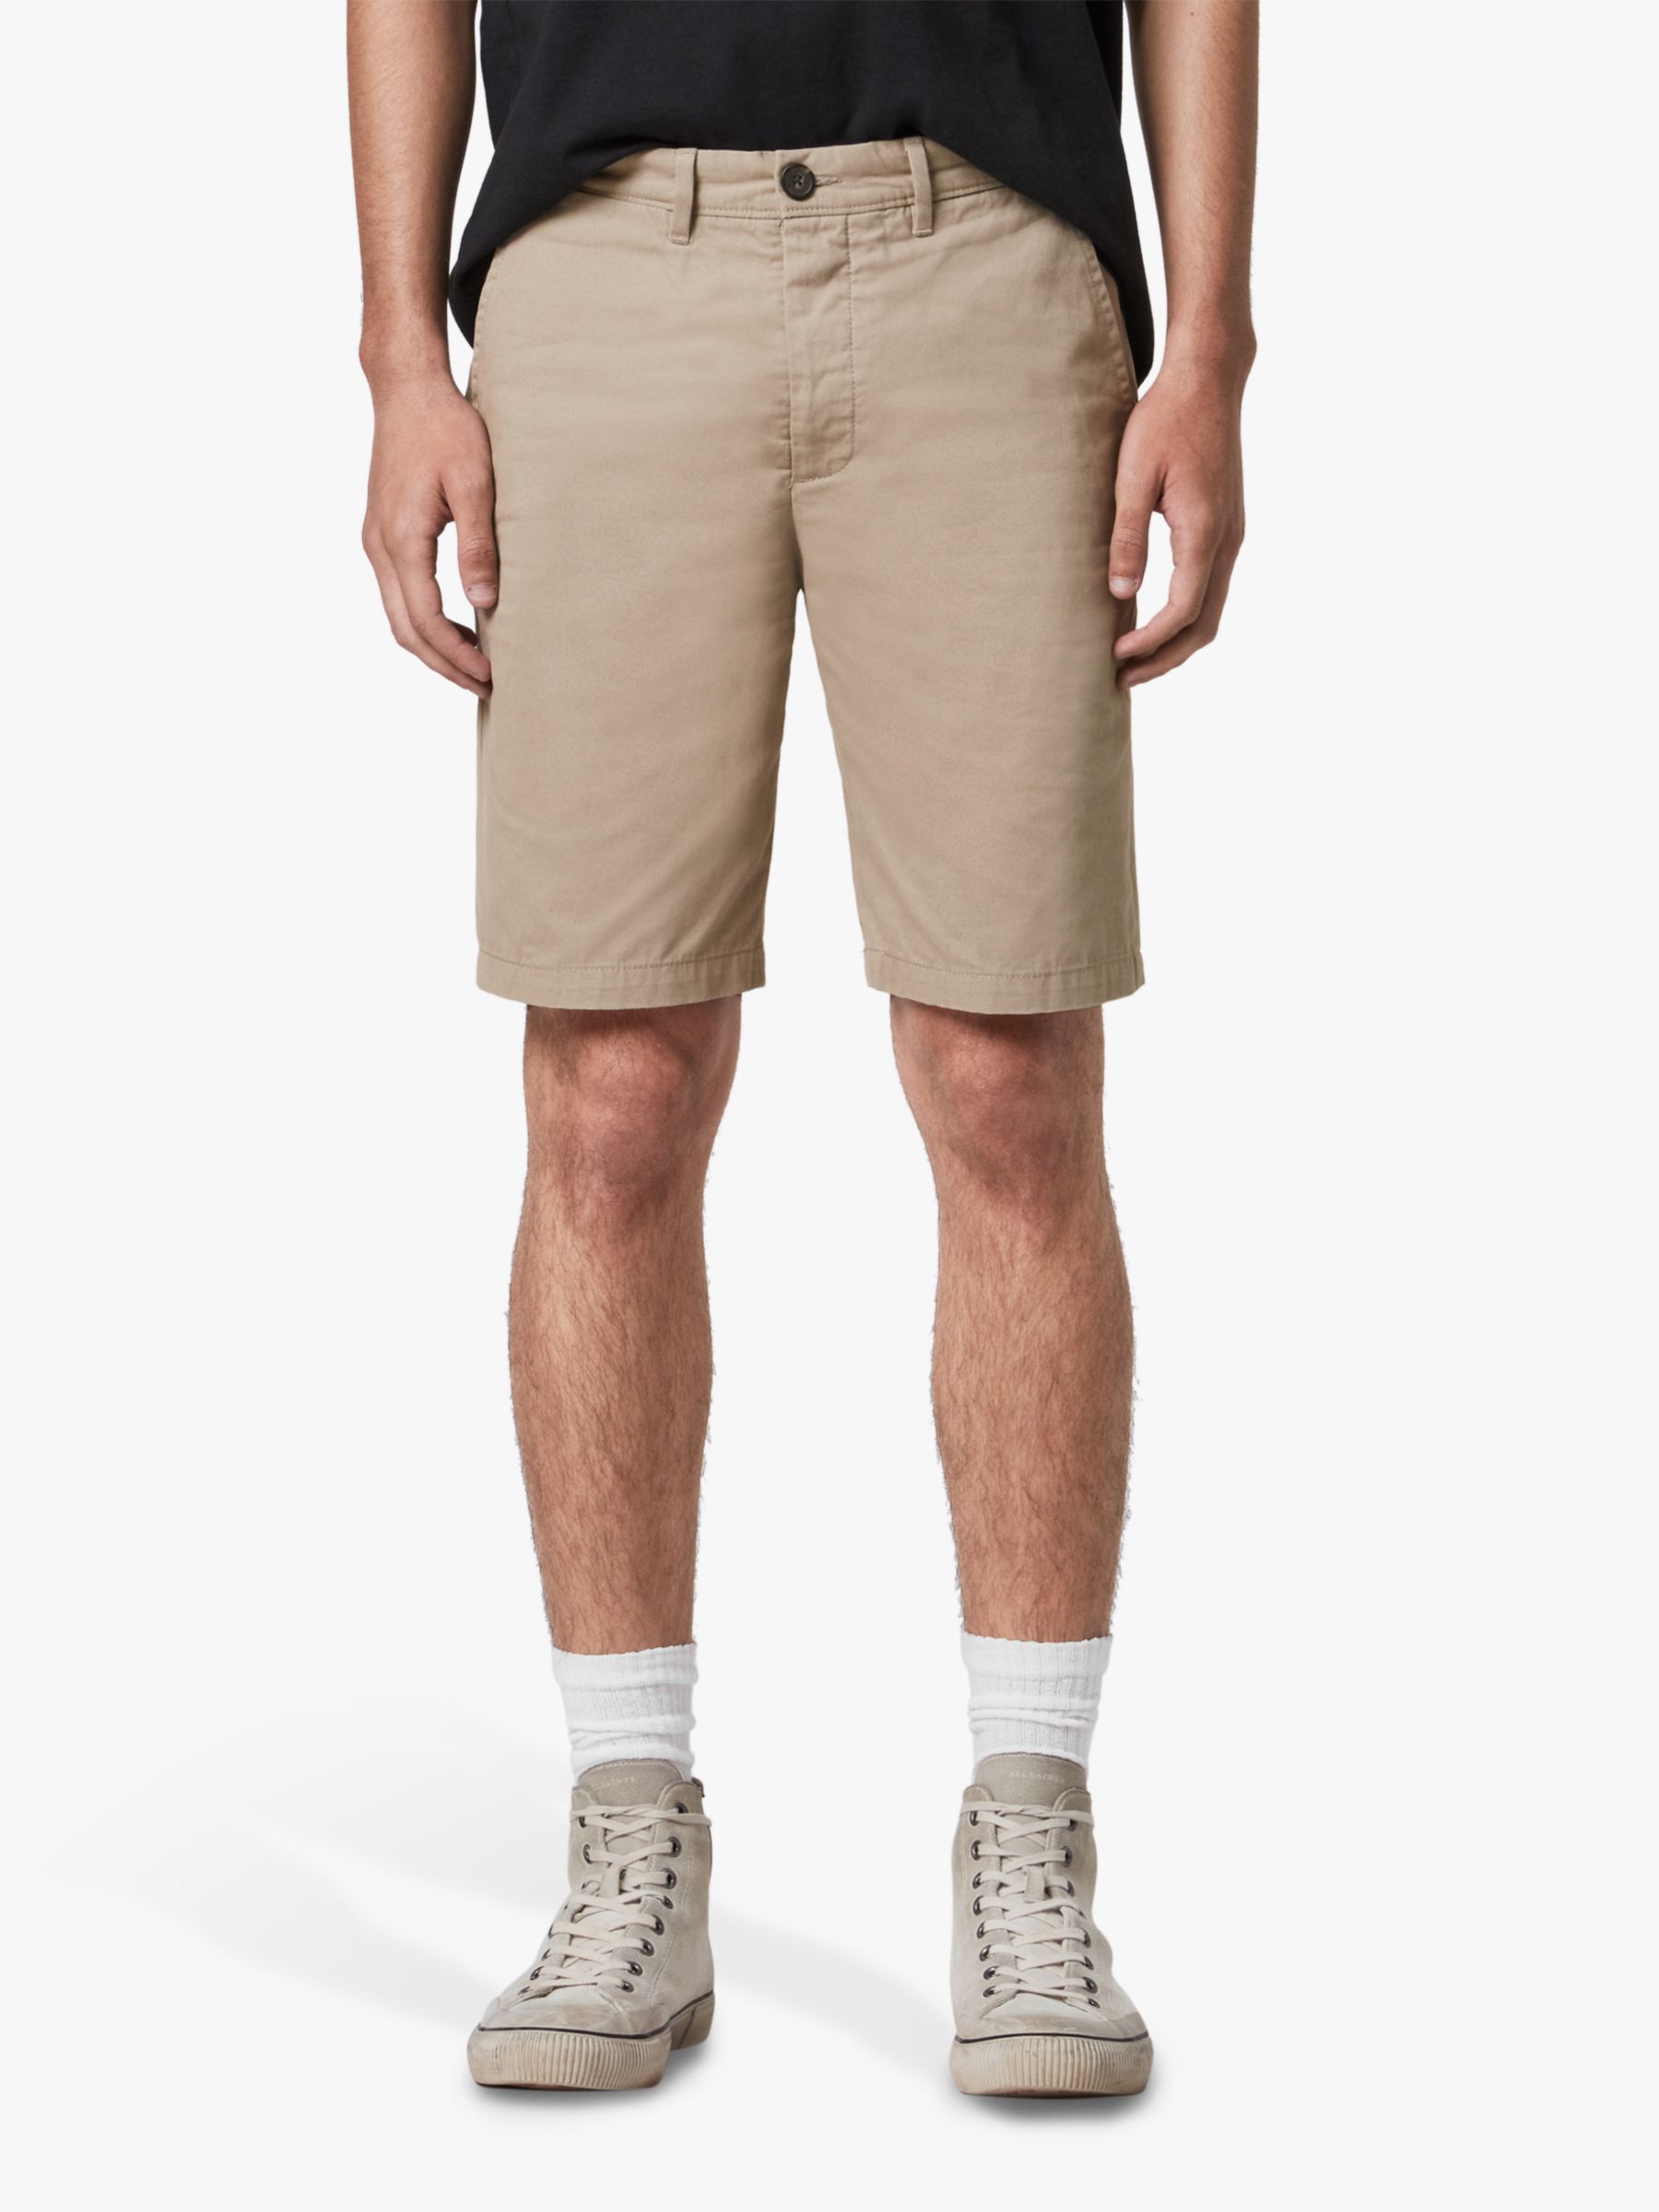 AllSaints Cobalt Cotton Shorts, Sand, 31R